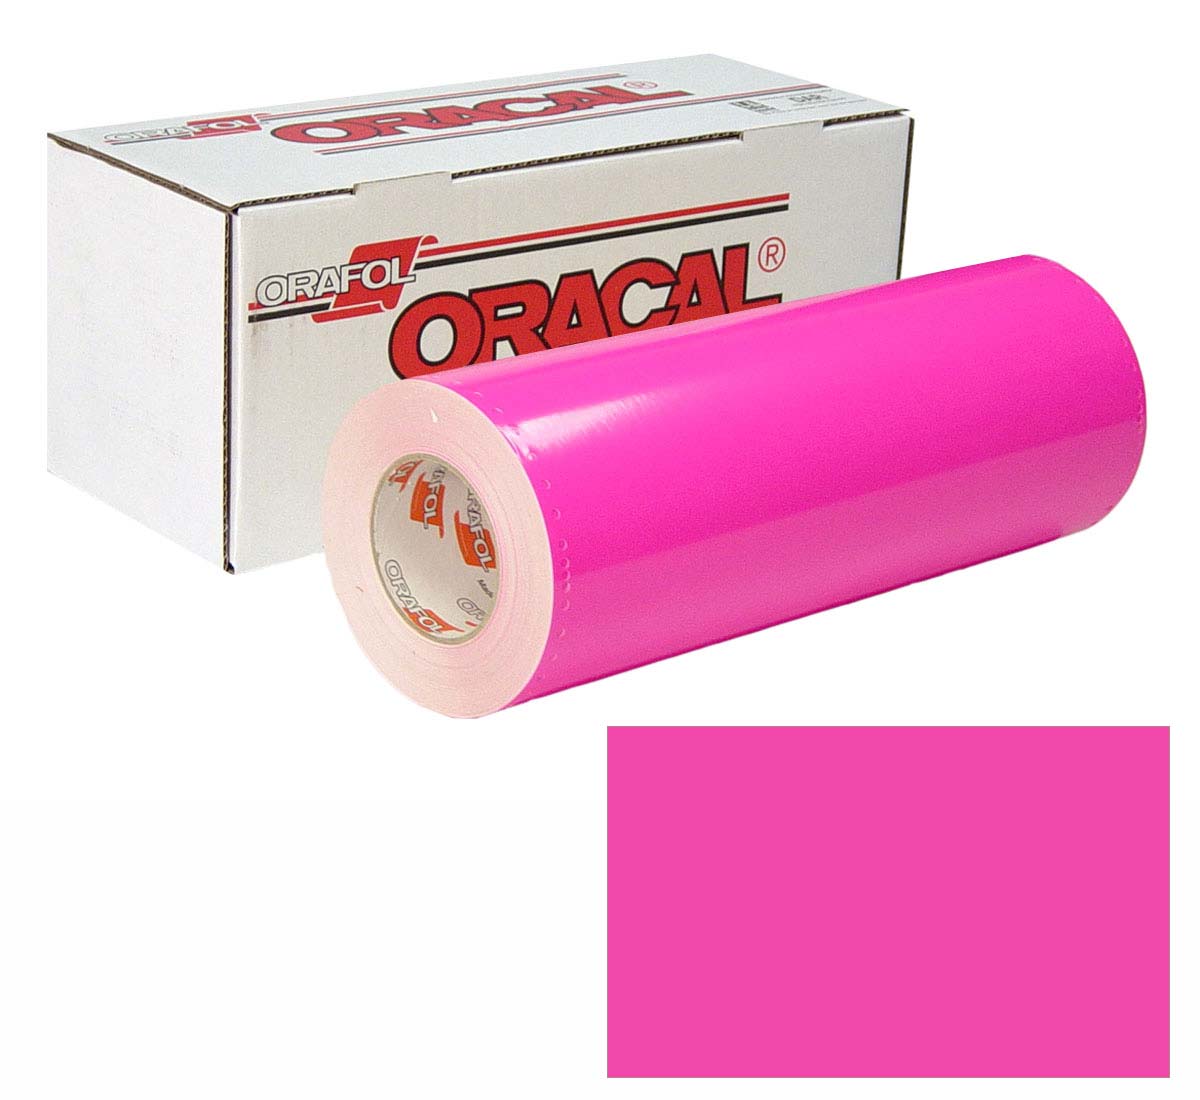 ORACAL 6510 Fluor Unp 48in X 10yd 046 Pink